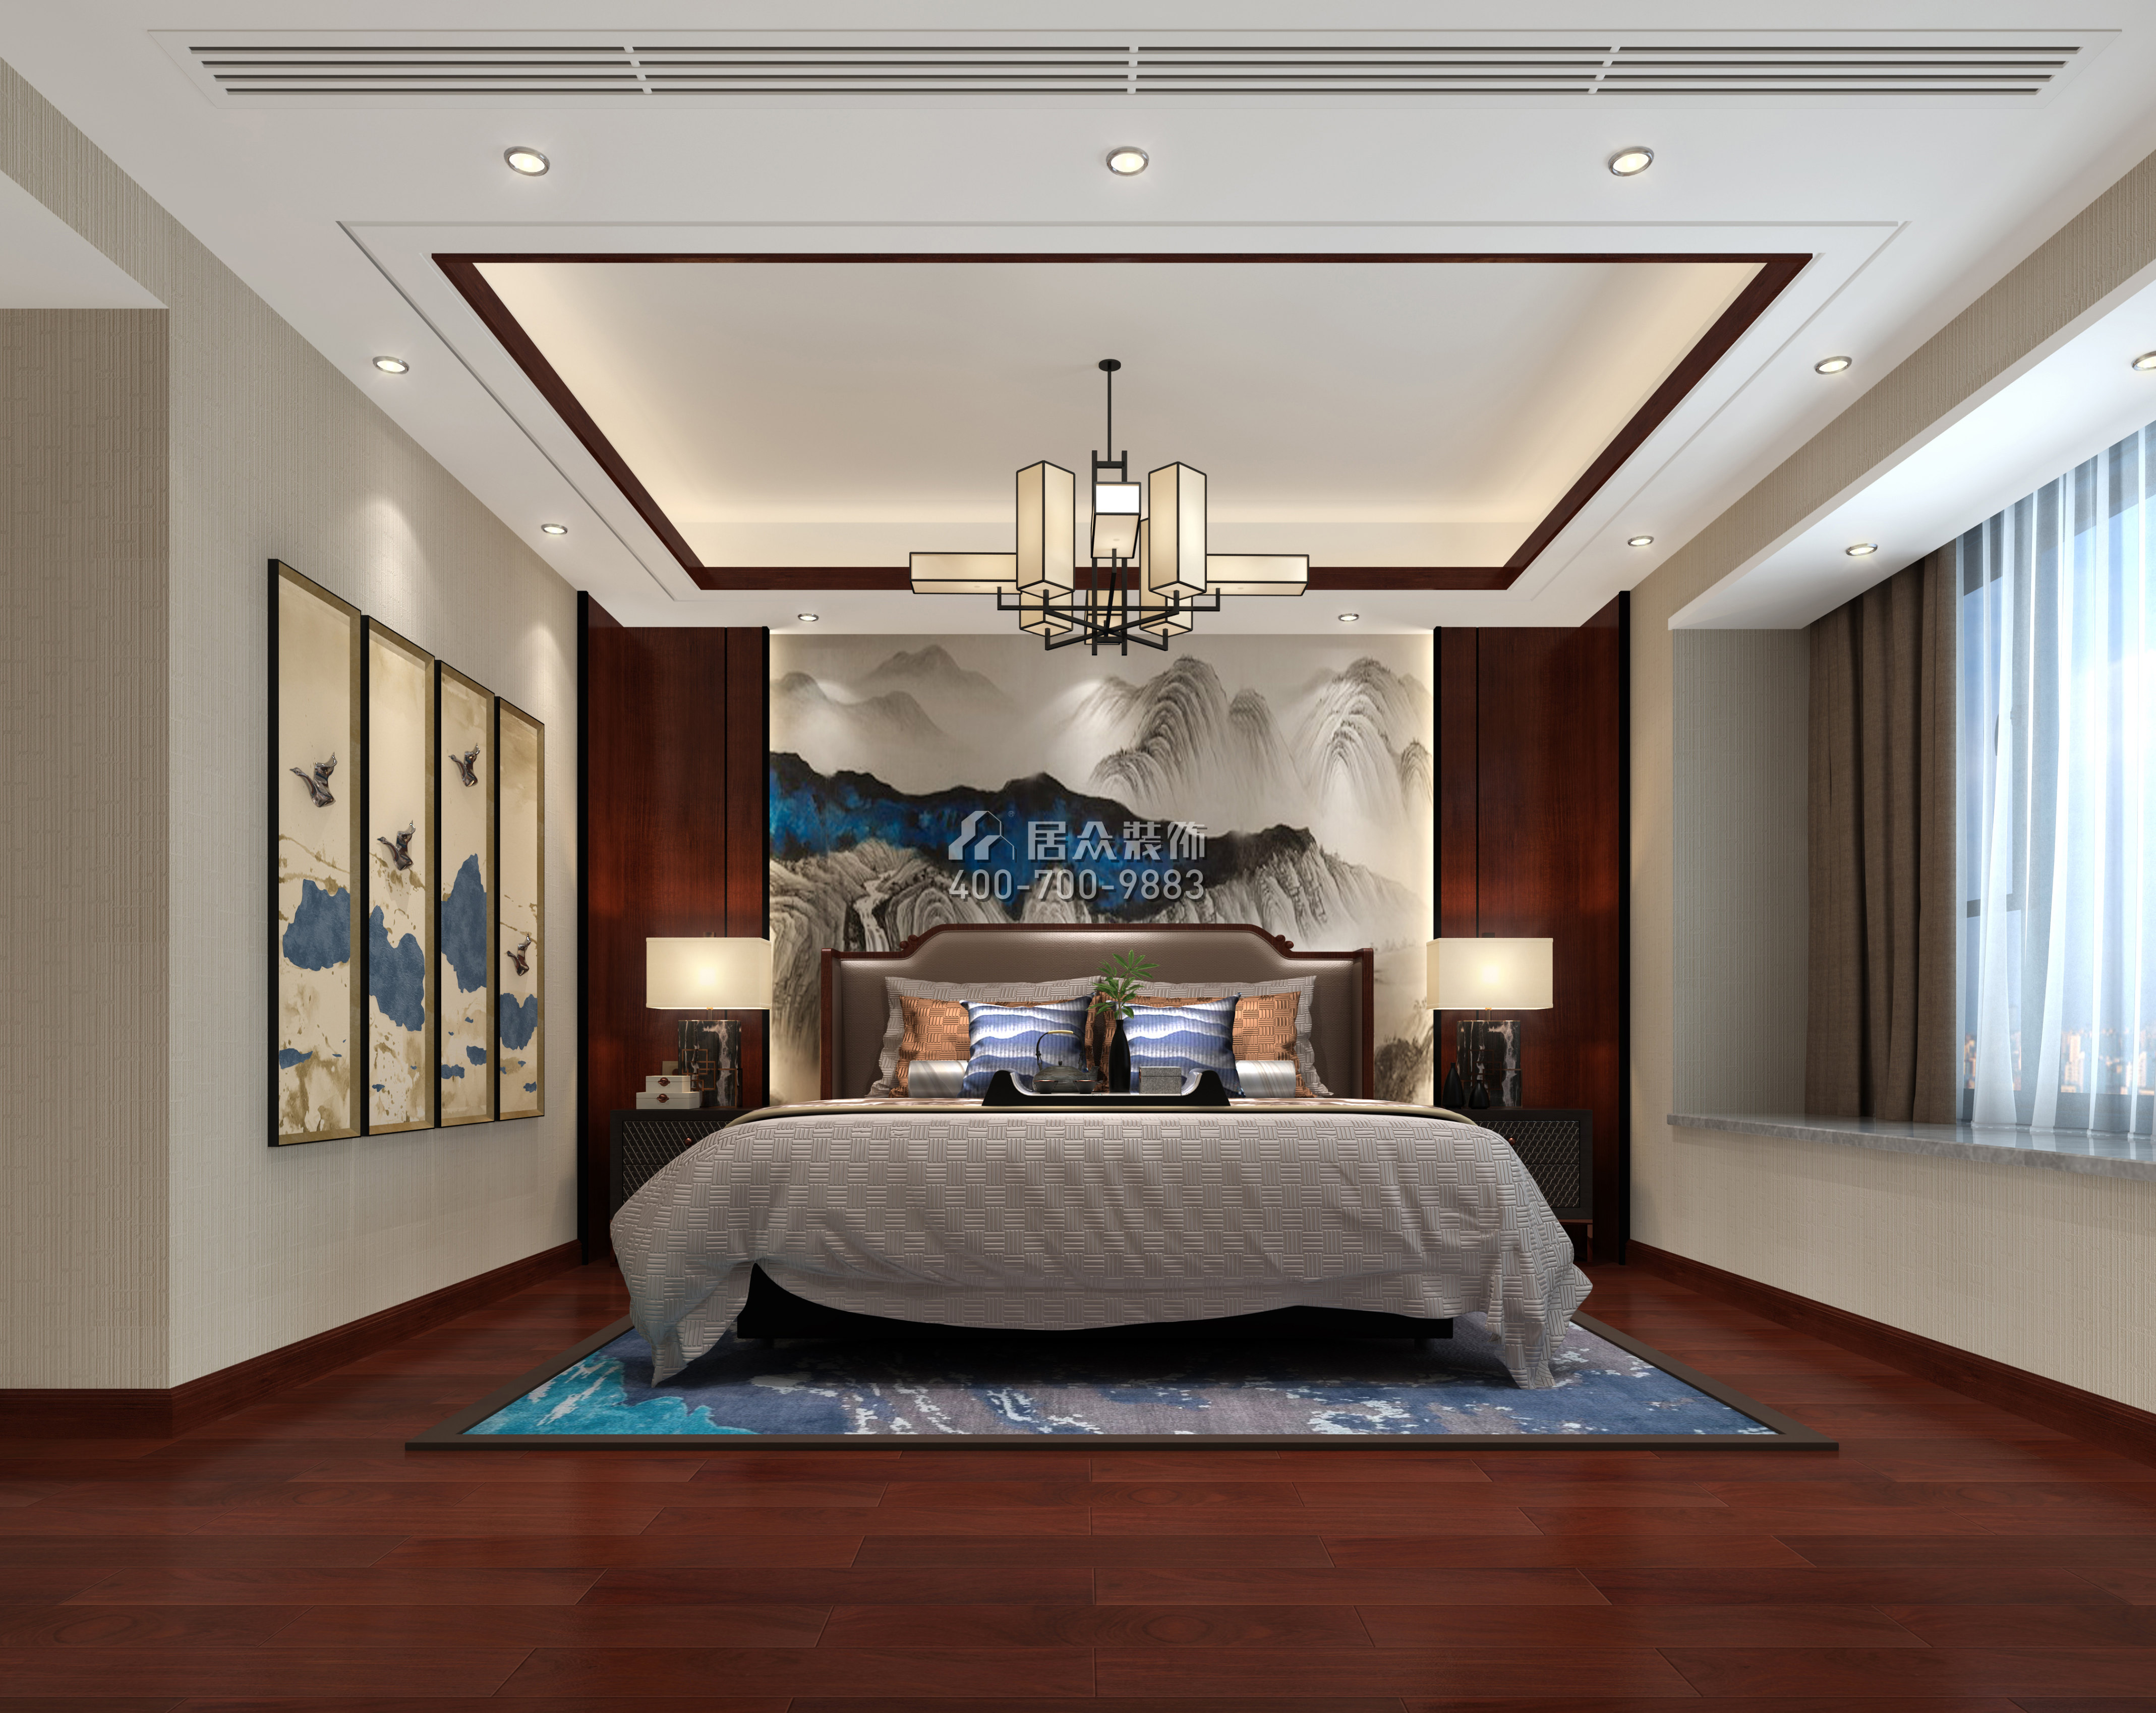 格力海岸480平方米中式风格复式户型卧室装修效果图